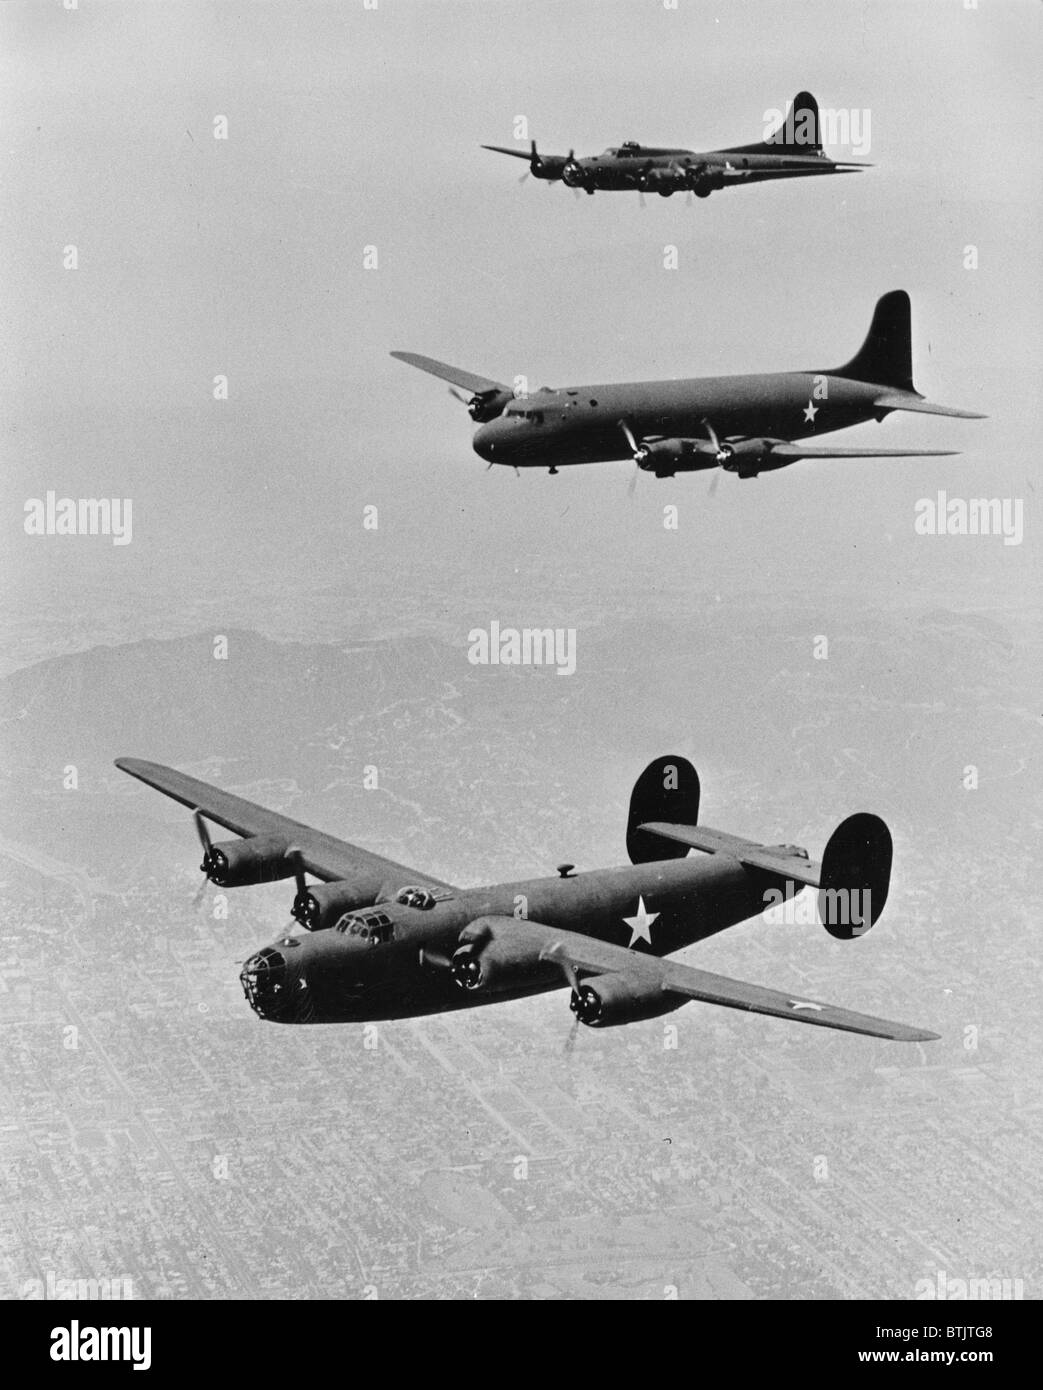 Zweiter Weltkrieg, Vereinigte Staaten von Amerika Flugzeuge in Echelon-Formation, von oben: Boeing Flying Fortress B17, Douglas Transport konsolidiert Befreier b-24, ca. 1942. Stockfoto